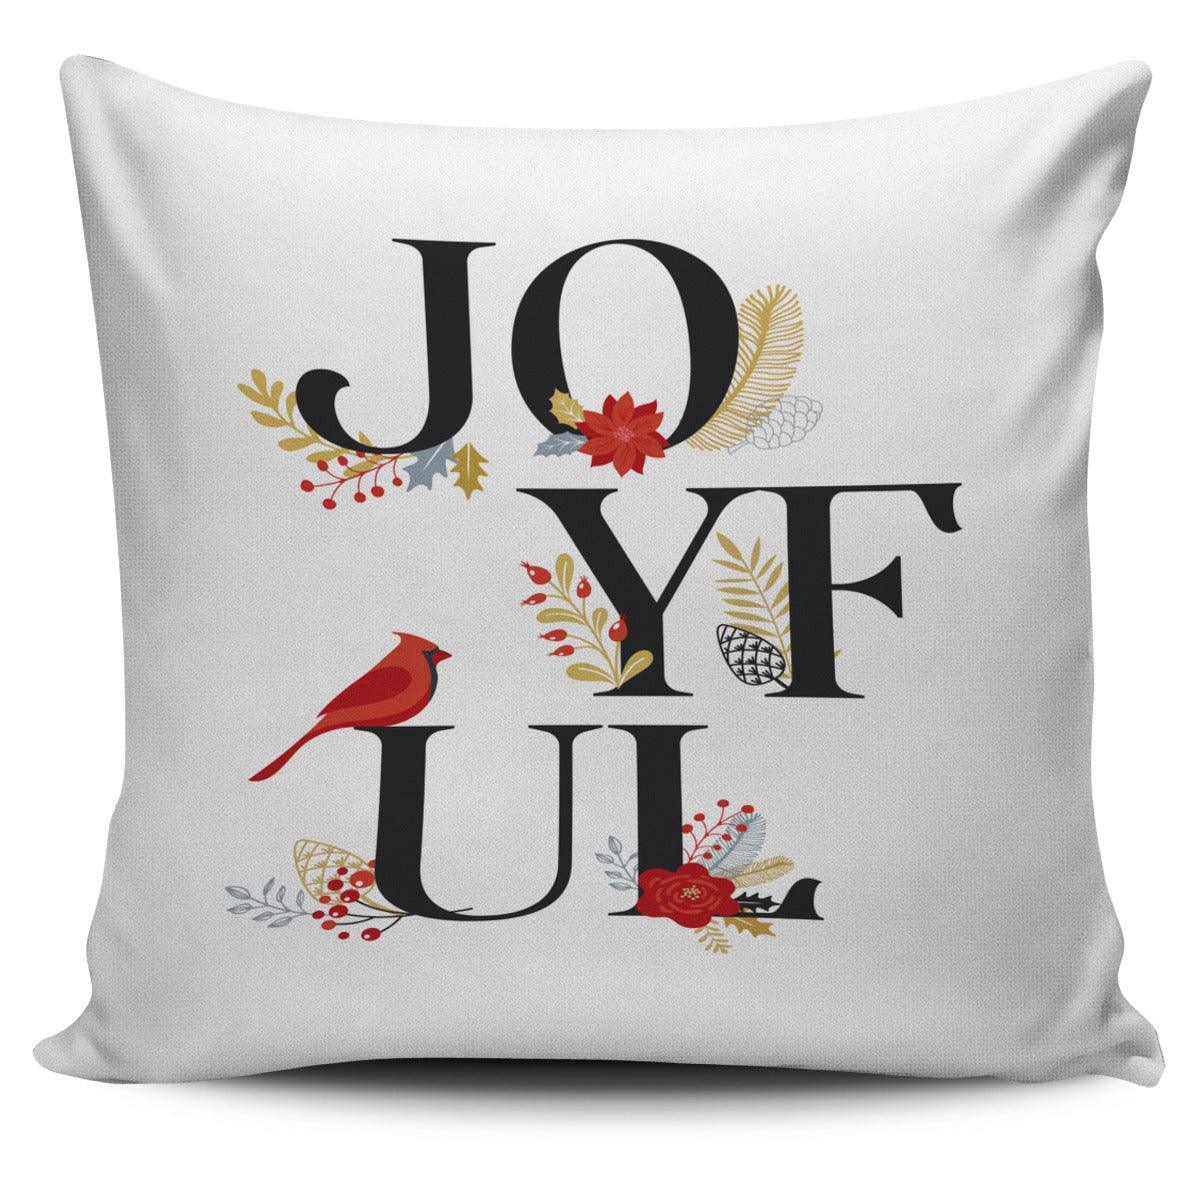 Christmas Pillow "Joyful"